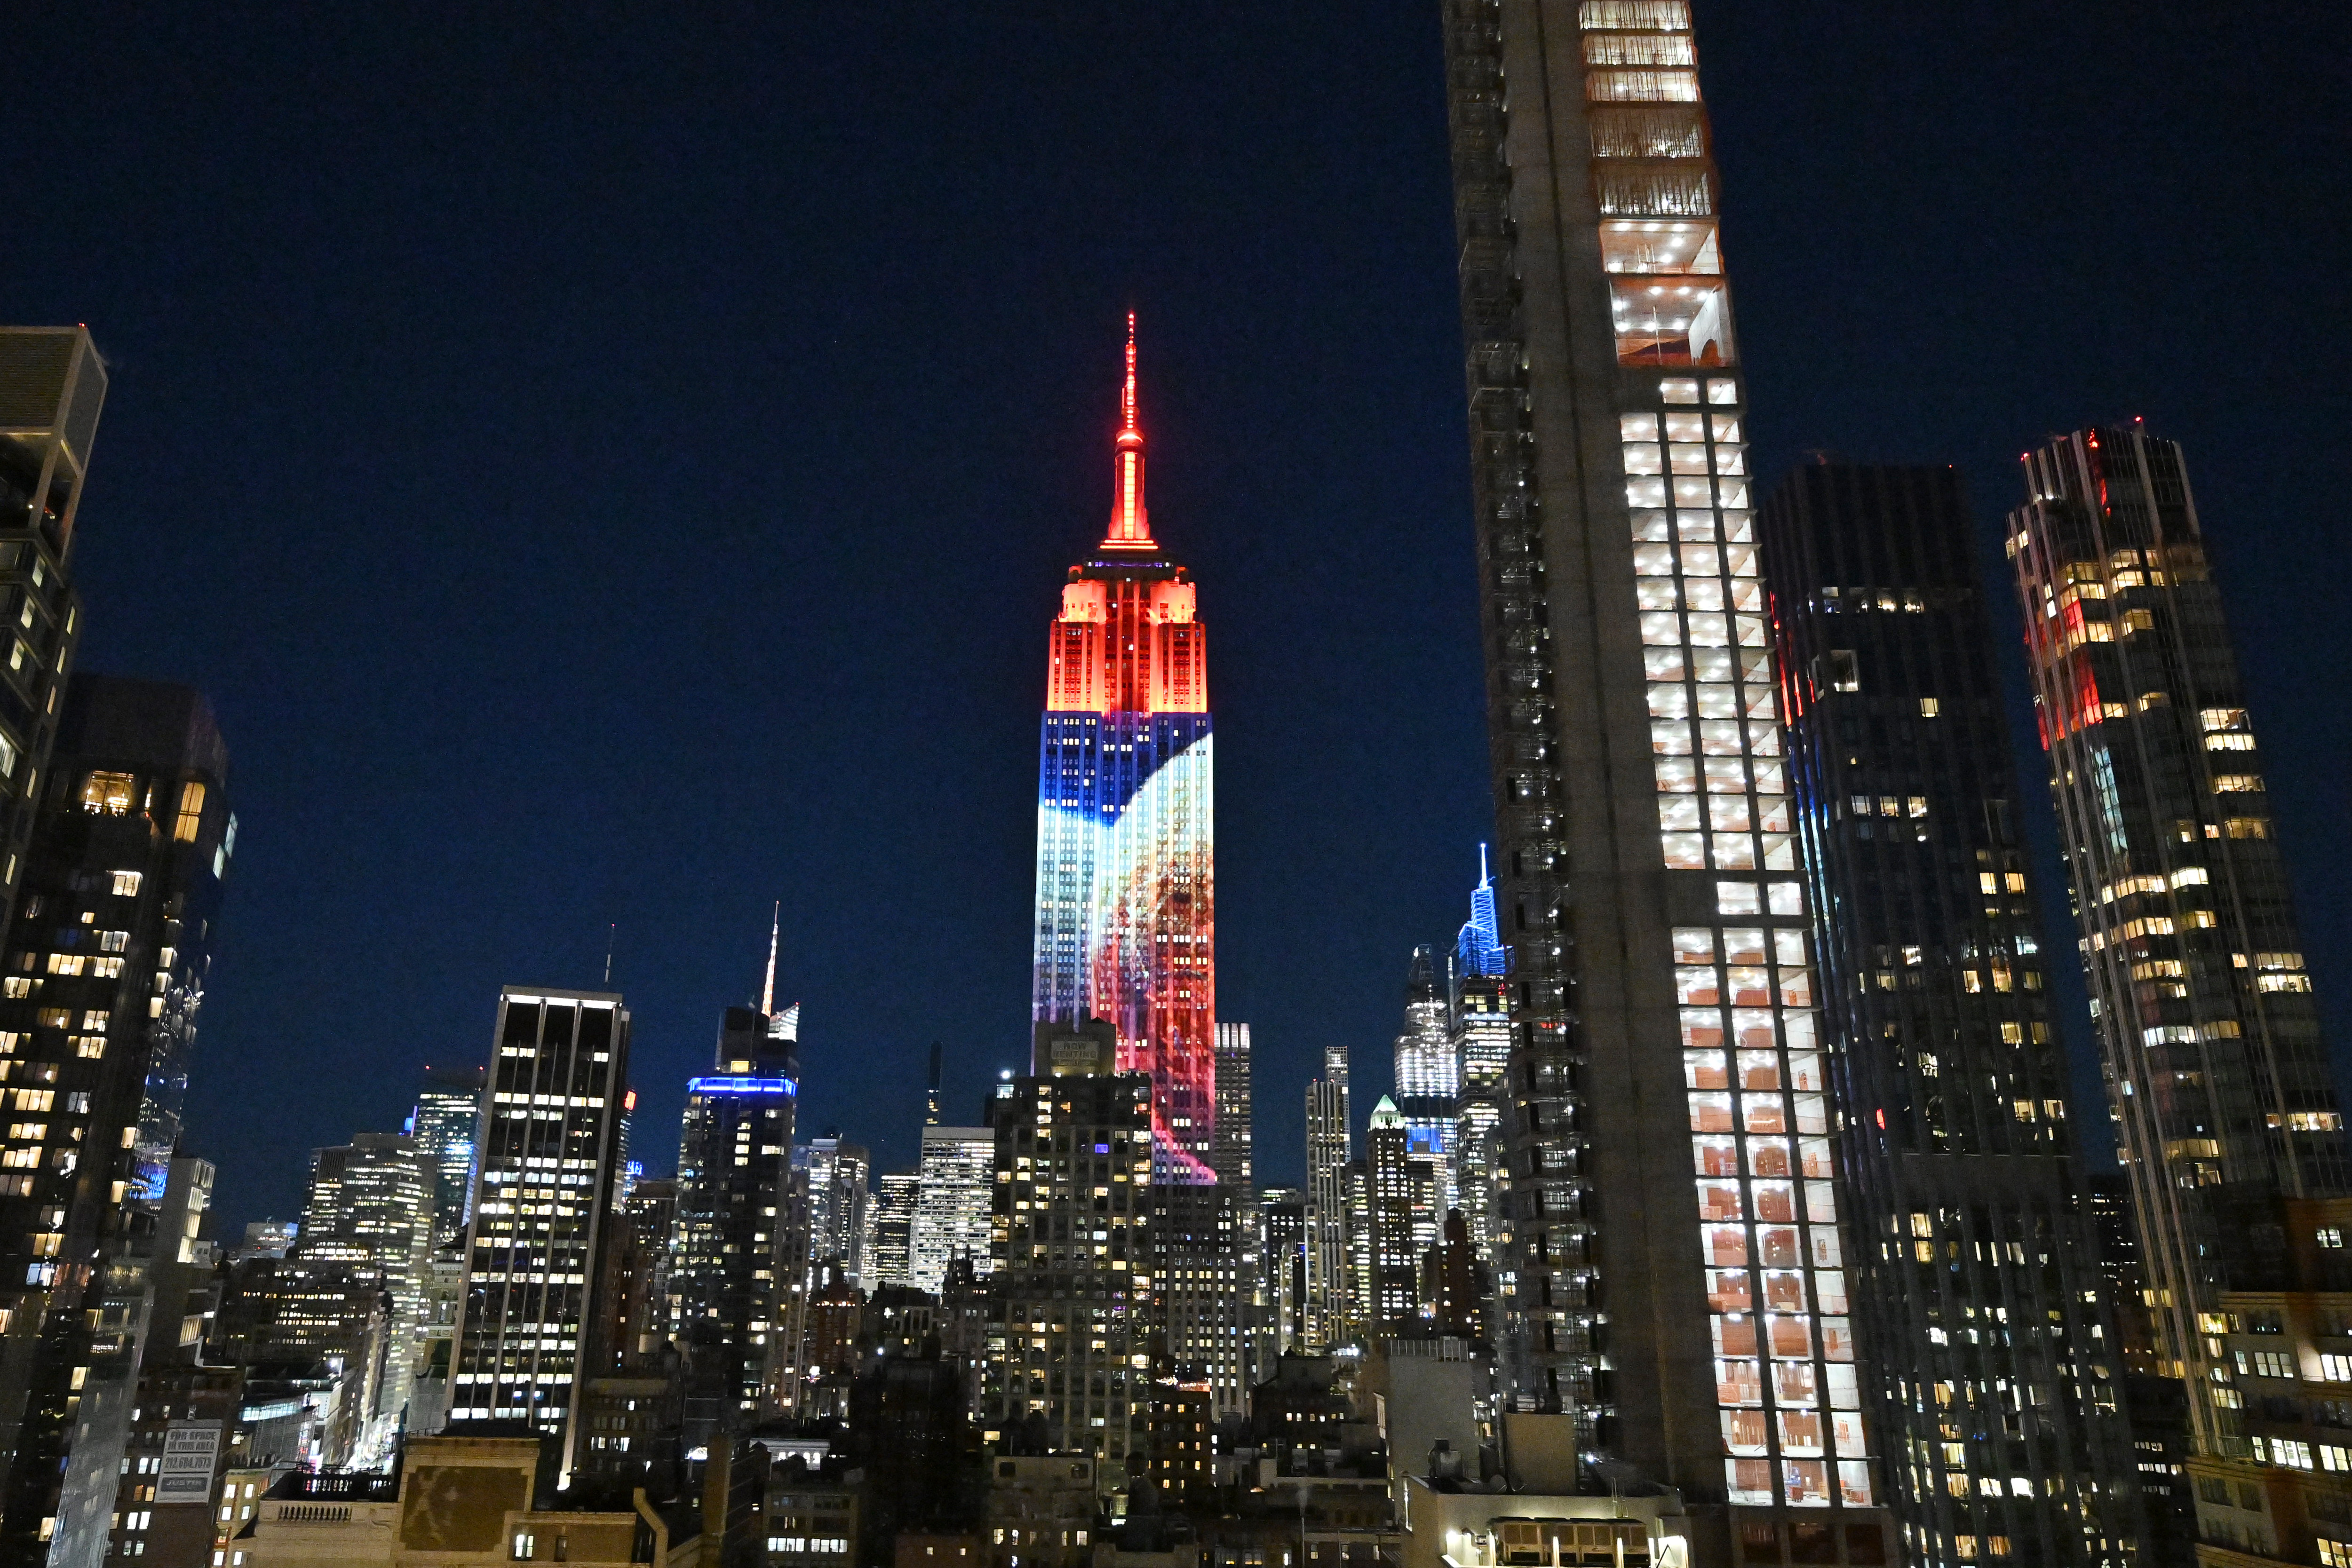 Star Wars Lichter des Empire State Buildings